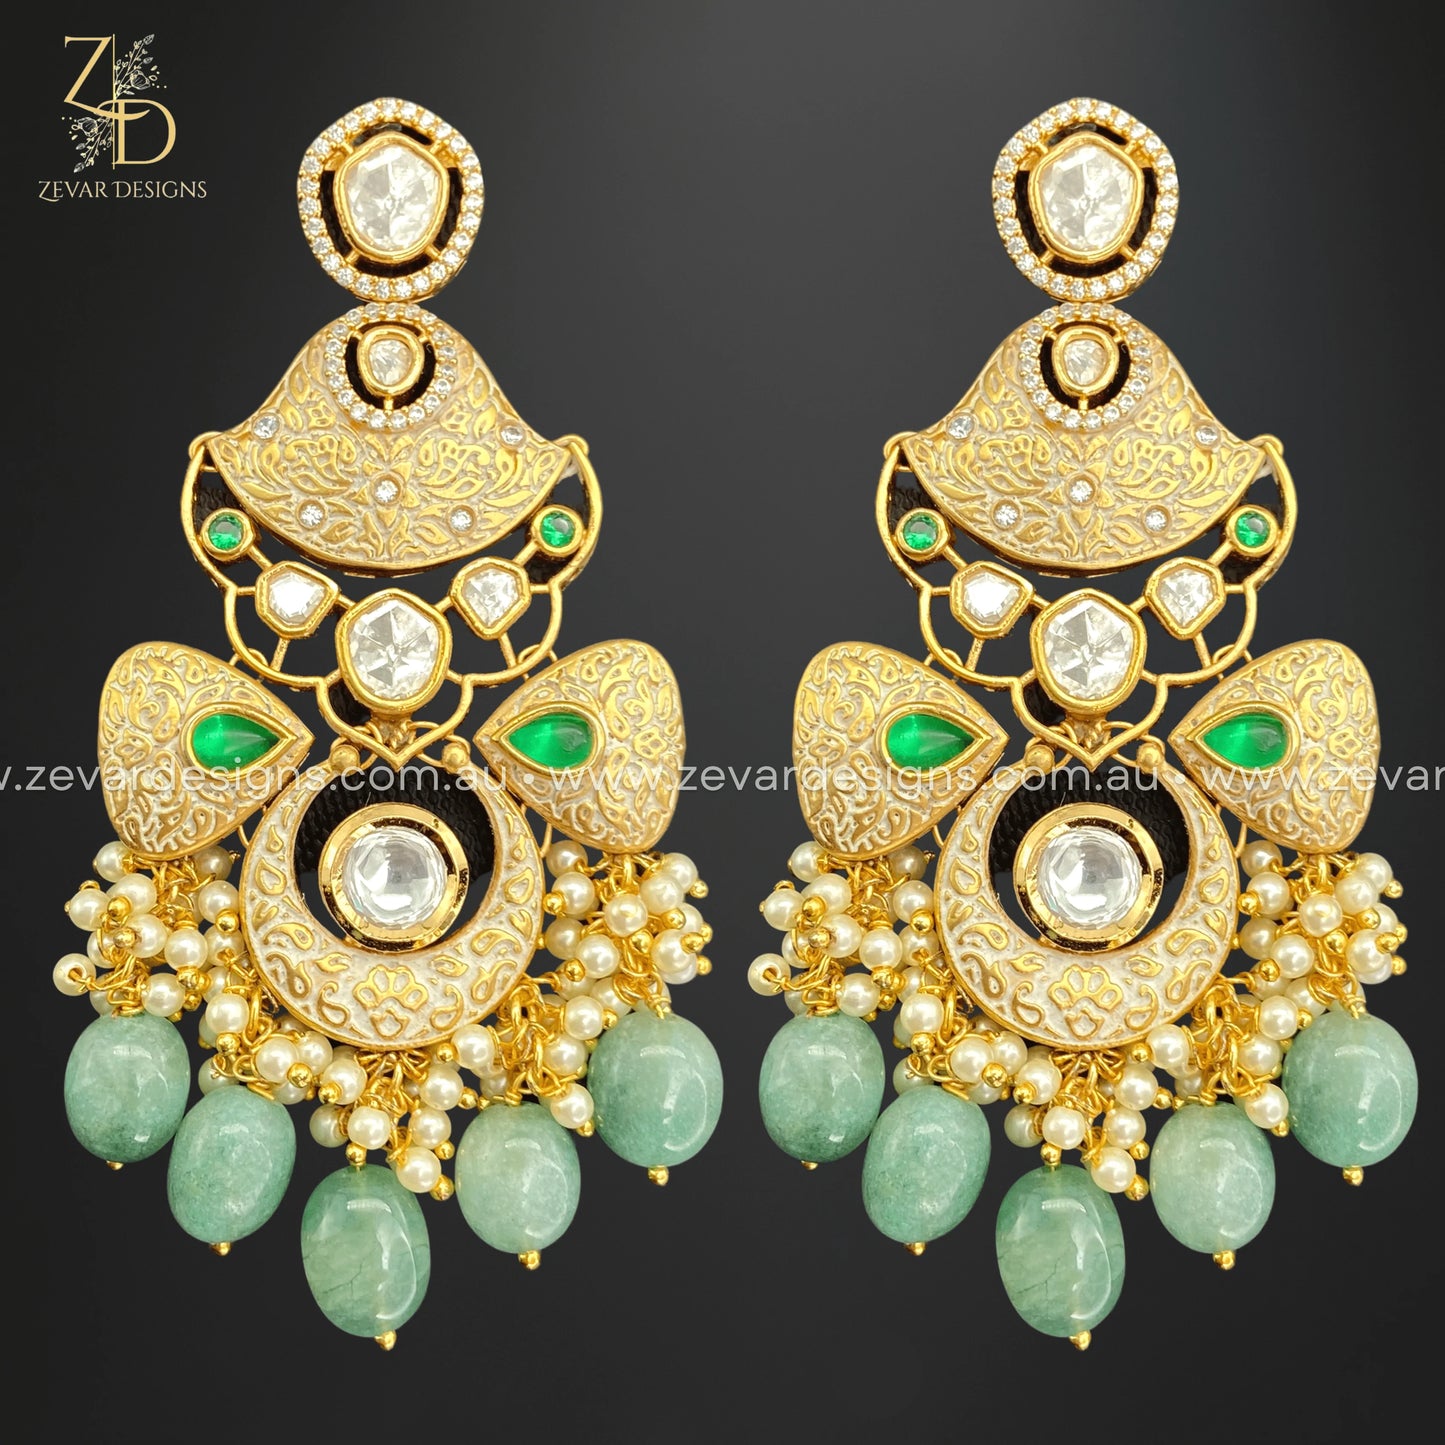 Zevar Designs Kundan Earrings Kundan Earrings in Ivory and Emerald Green Drops